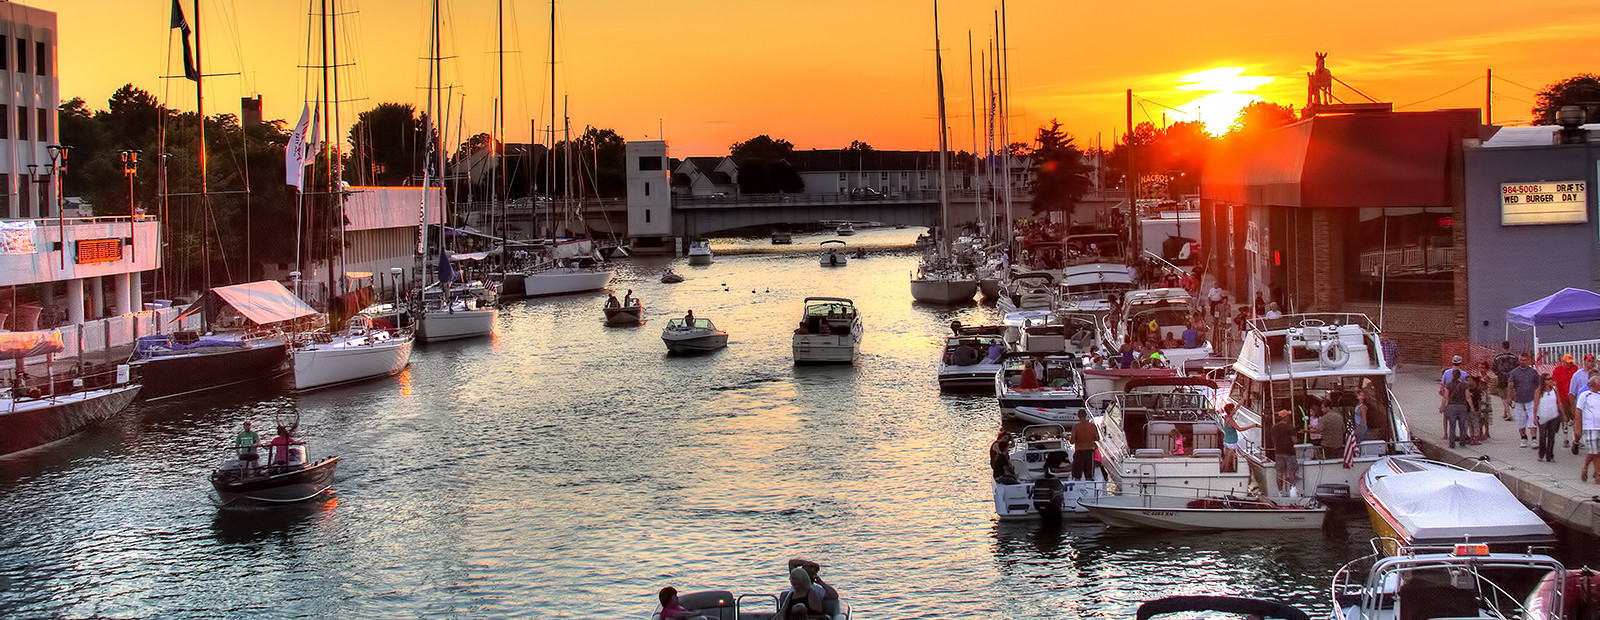 Port Huron boats at dusk